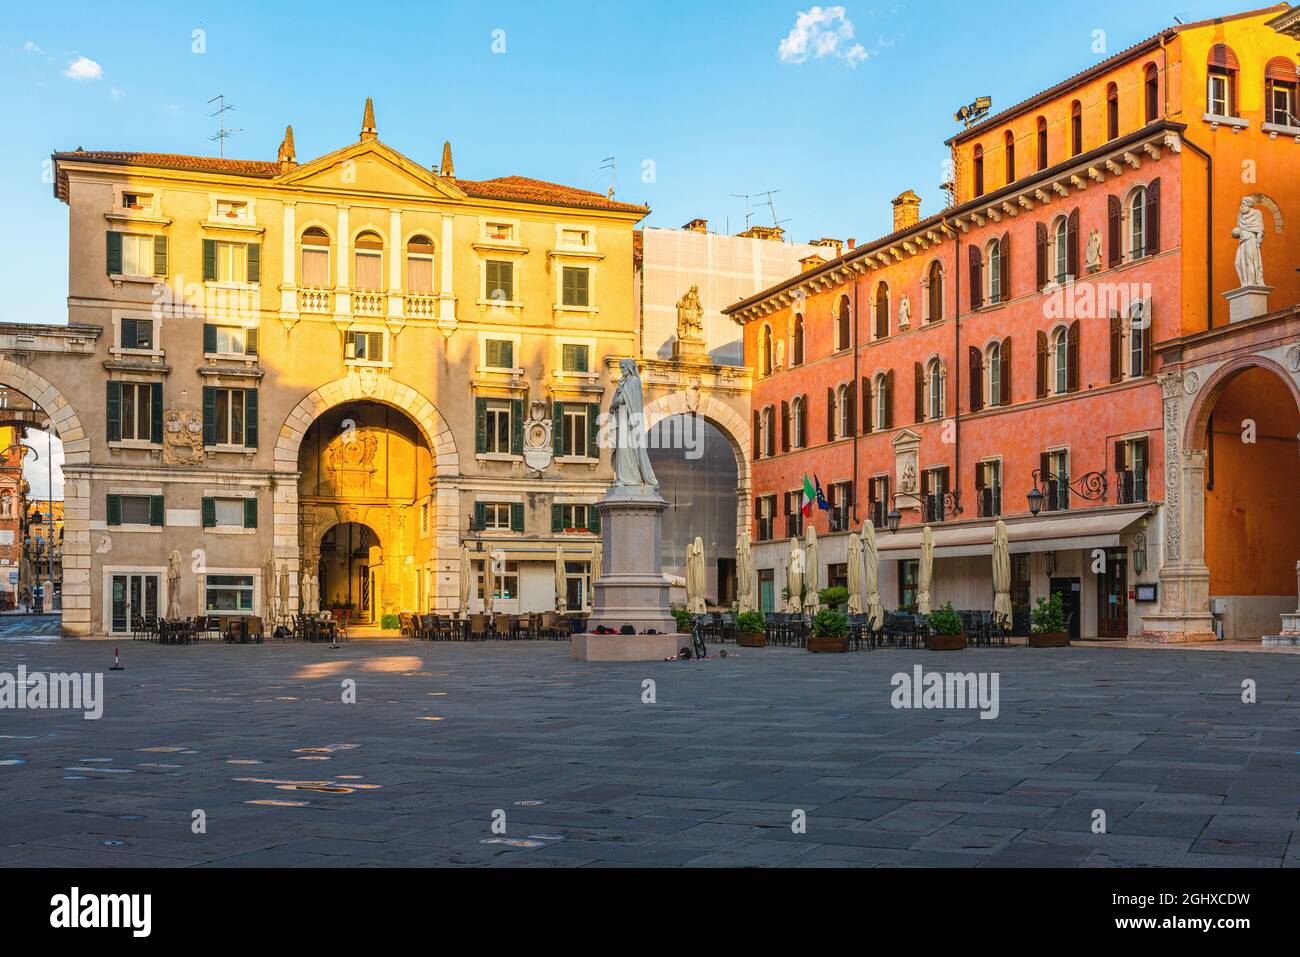 Piazza dei Signori nel centro storico di Verona con la statua di Dante. Destinazione turistica in Veneto Foto Stock